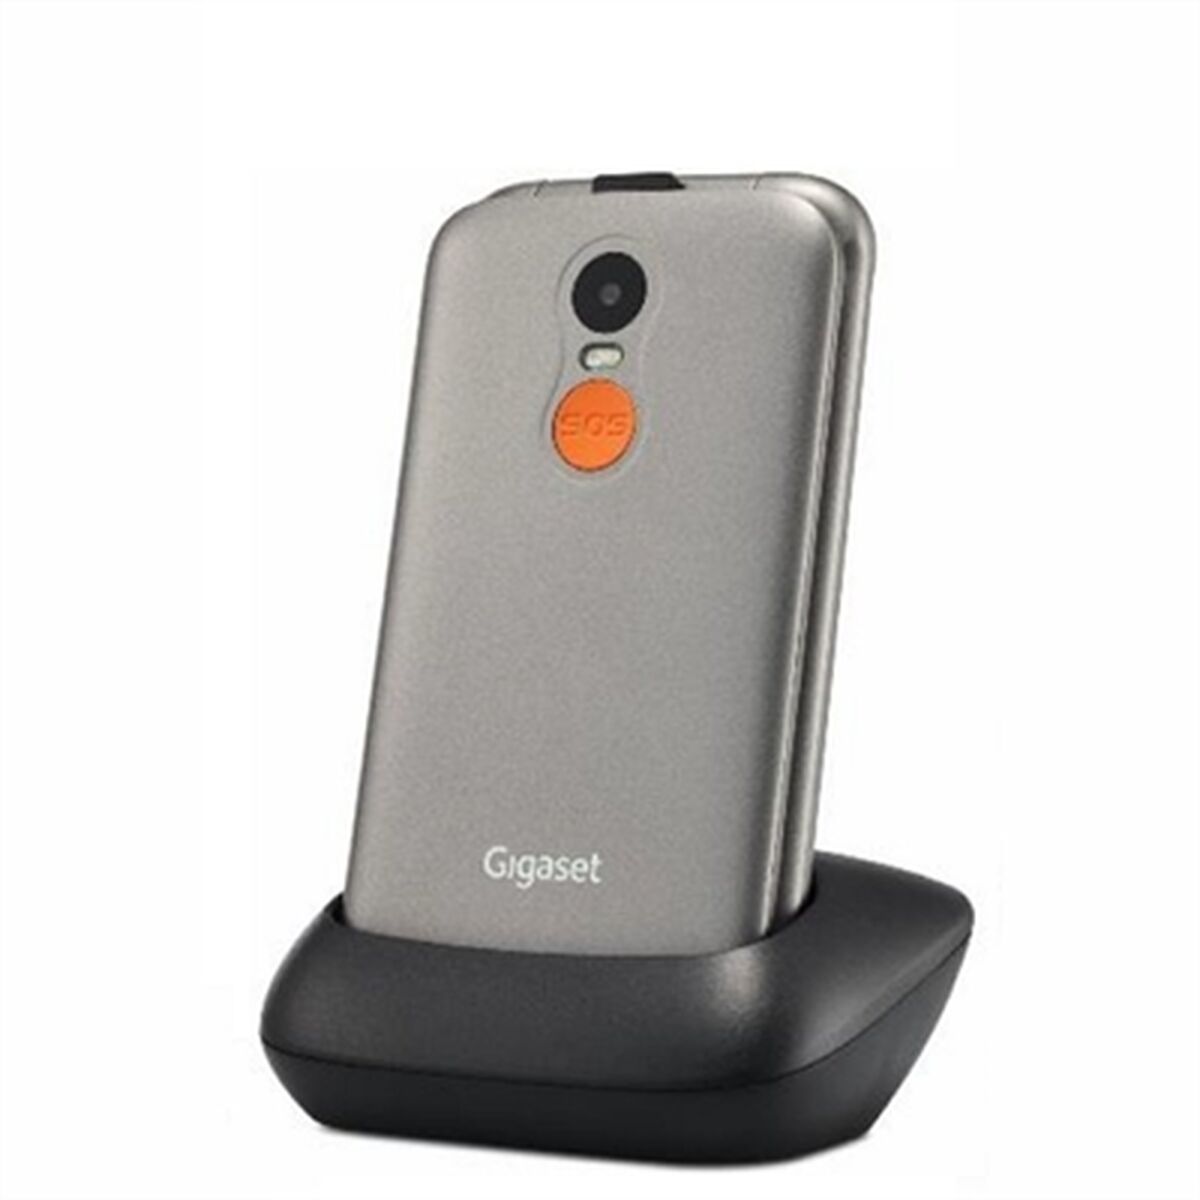 Téléphone portable pour personnes âgées Gigaset GL590 Gris 800 mAh 2G 2,8"